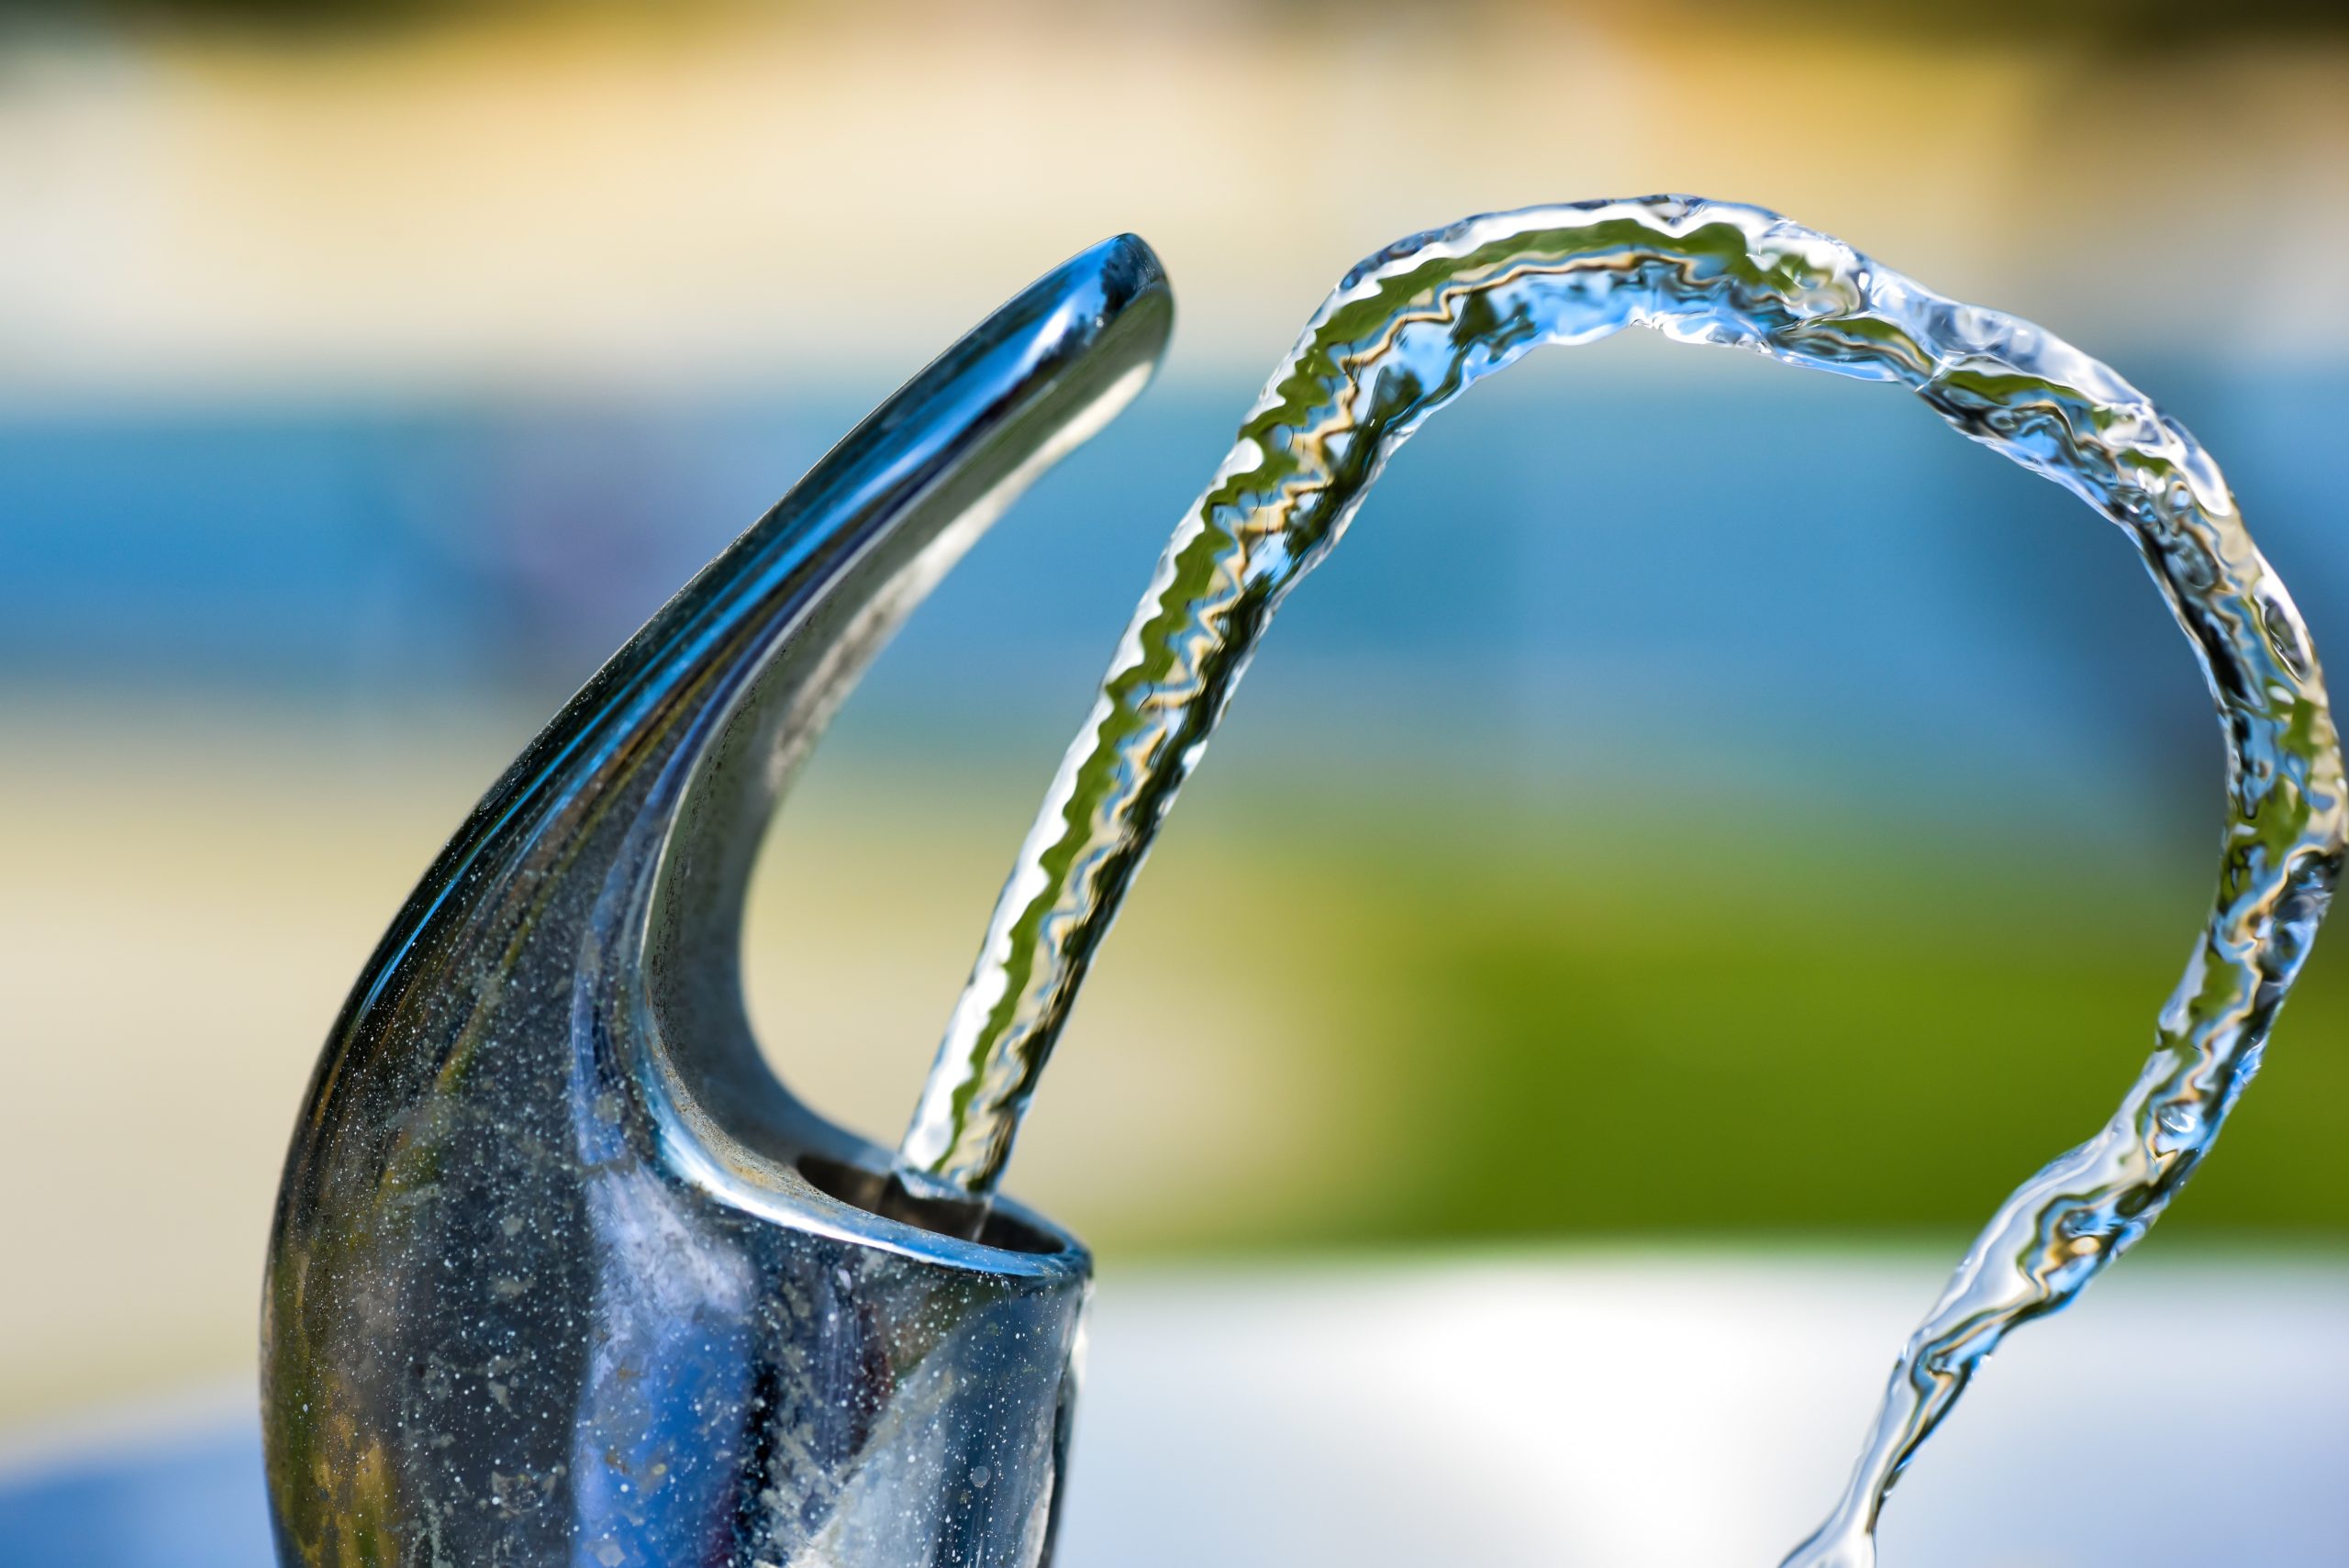 Waterprijs: de Brusselse regering neemt akte en zal voor meer sociale bescherming zorgen